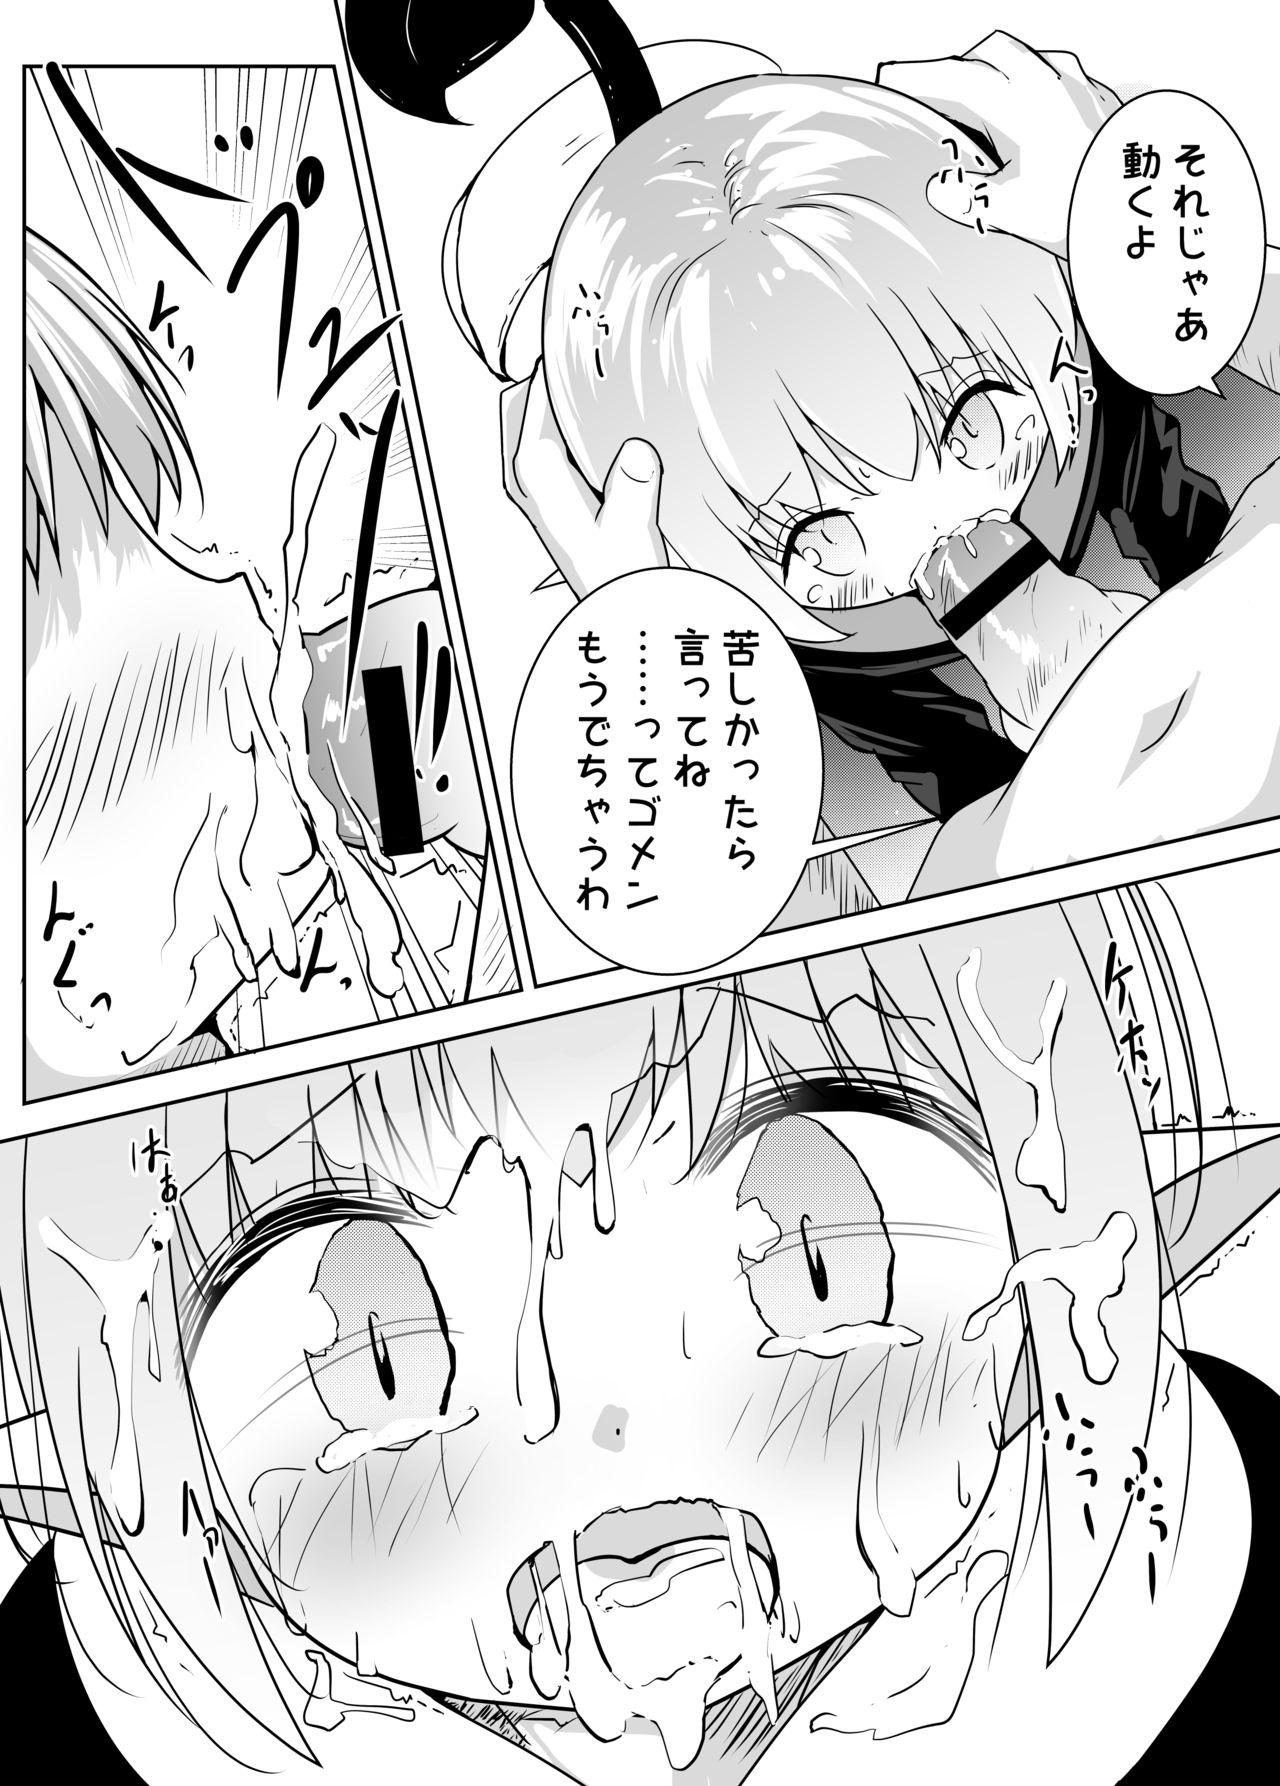 [Motiyuki] Ecchi na Koto ga Nigate na Loli Succubus-chan Manga 1-3 6